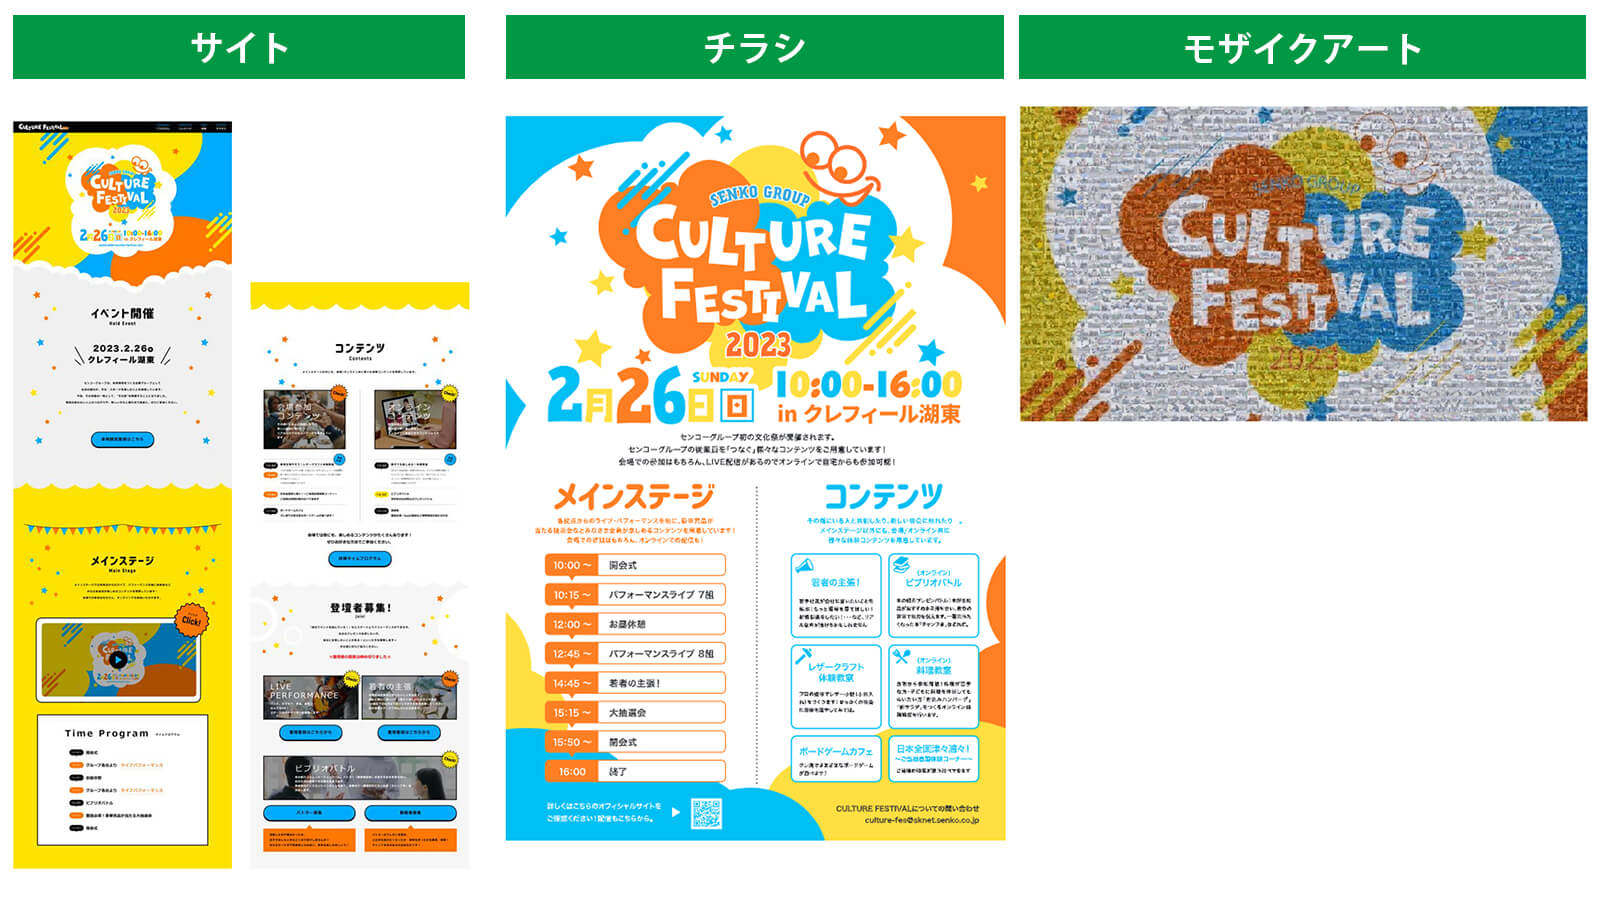 『CULTURE FESTIVAL2023』で制作された広報施策（サイト・チラシ・モザイクアート）